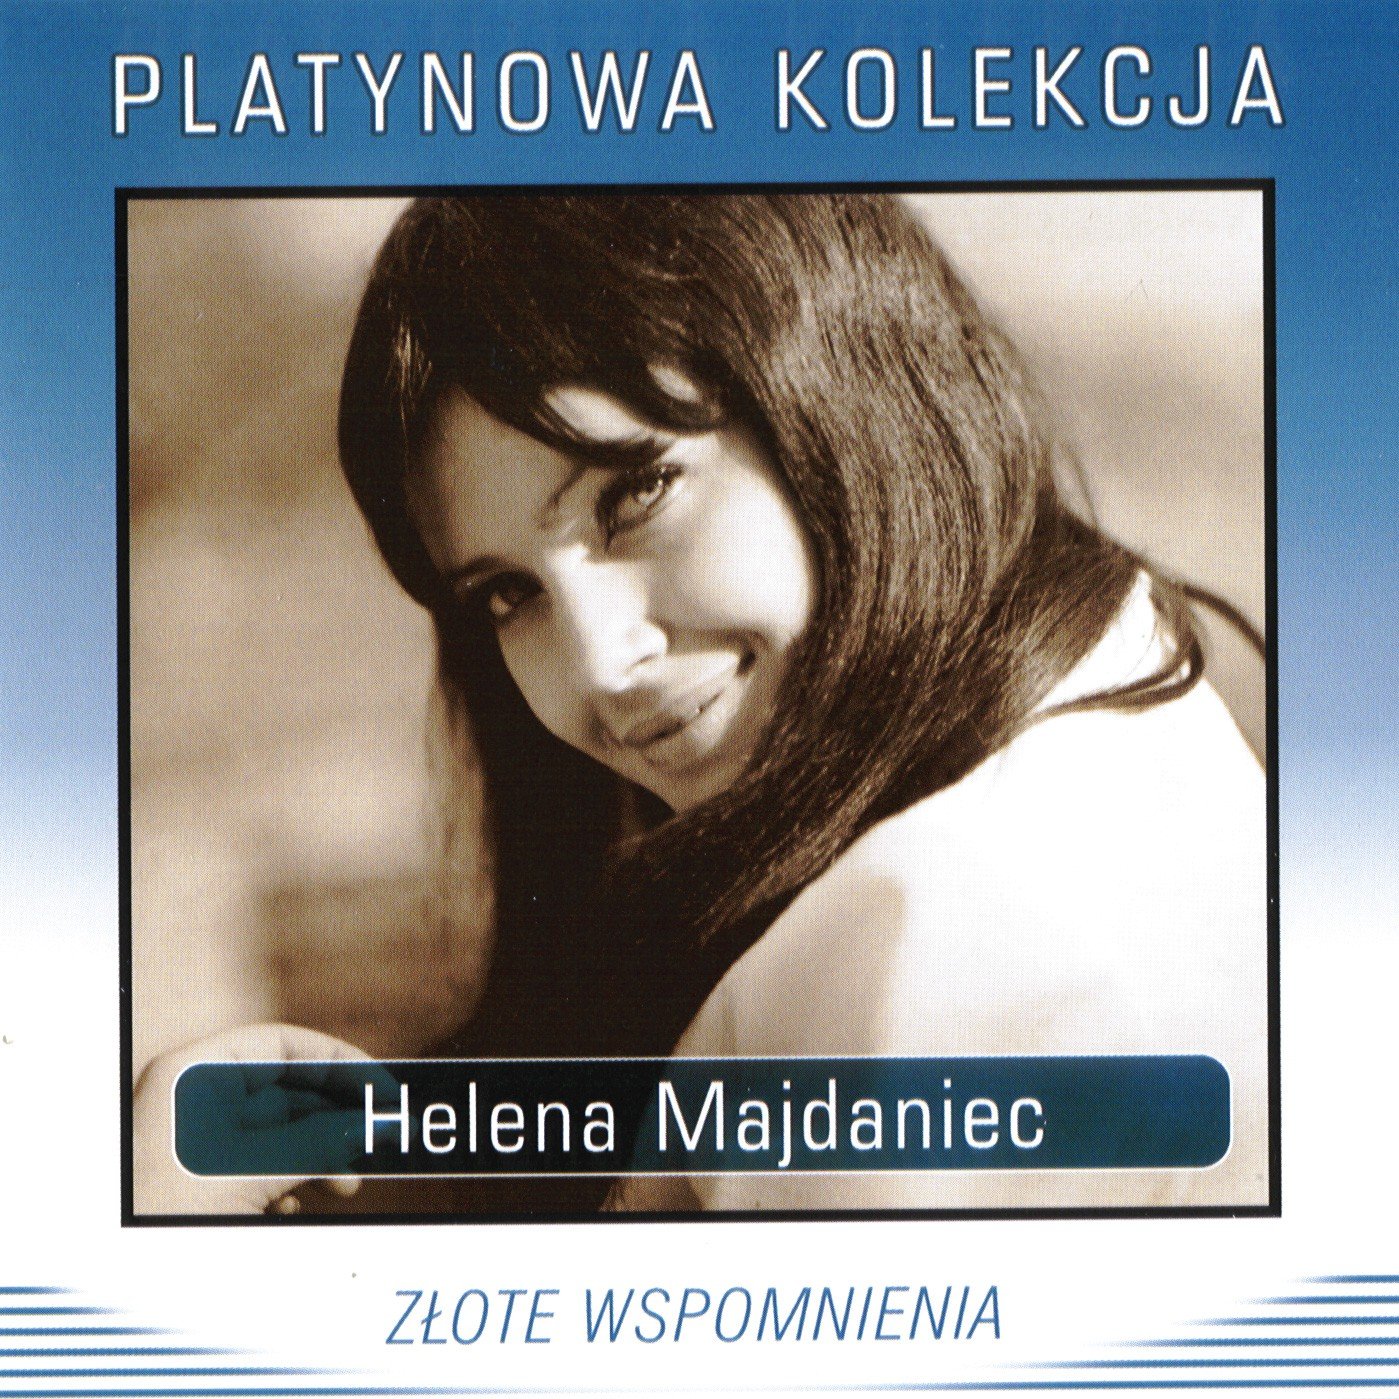 Helena Majdaniec - Zlote wspomnienia (Platynowa Kolekcja)